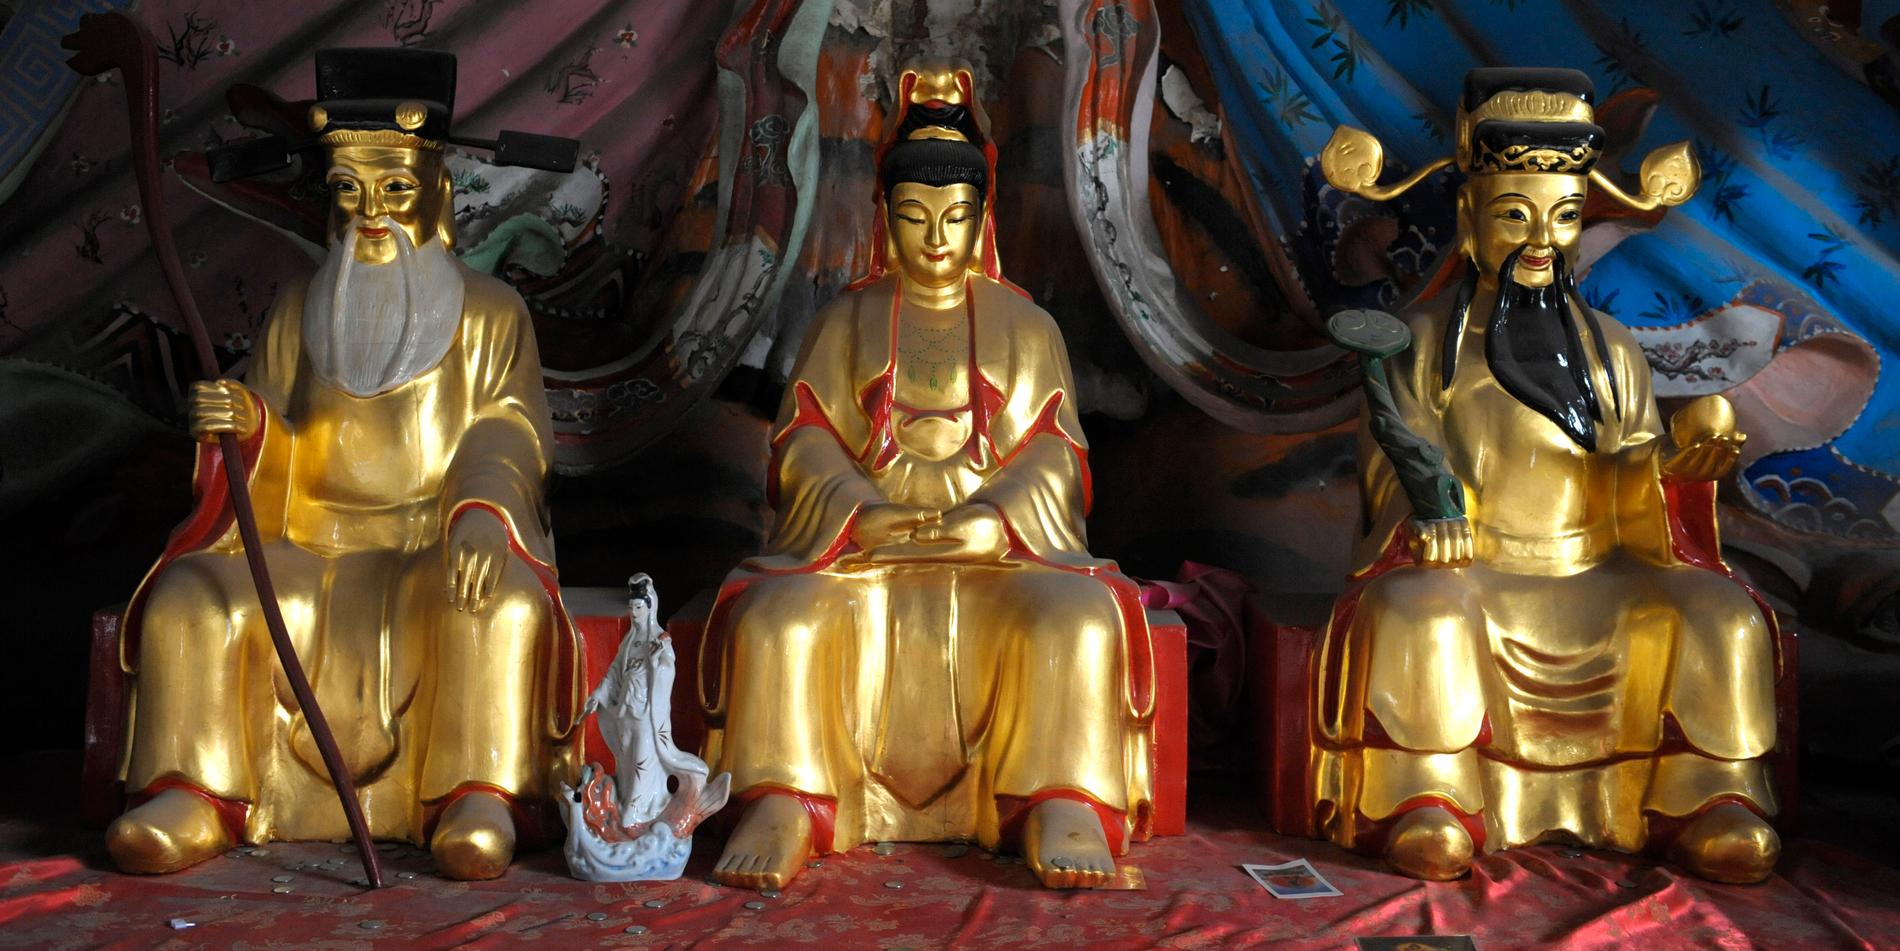 Arkivbild. Buddhafigurer från ett annat buddhisttempel.